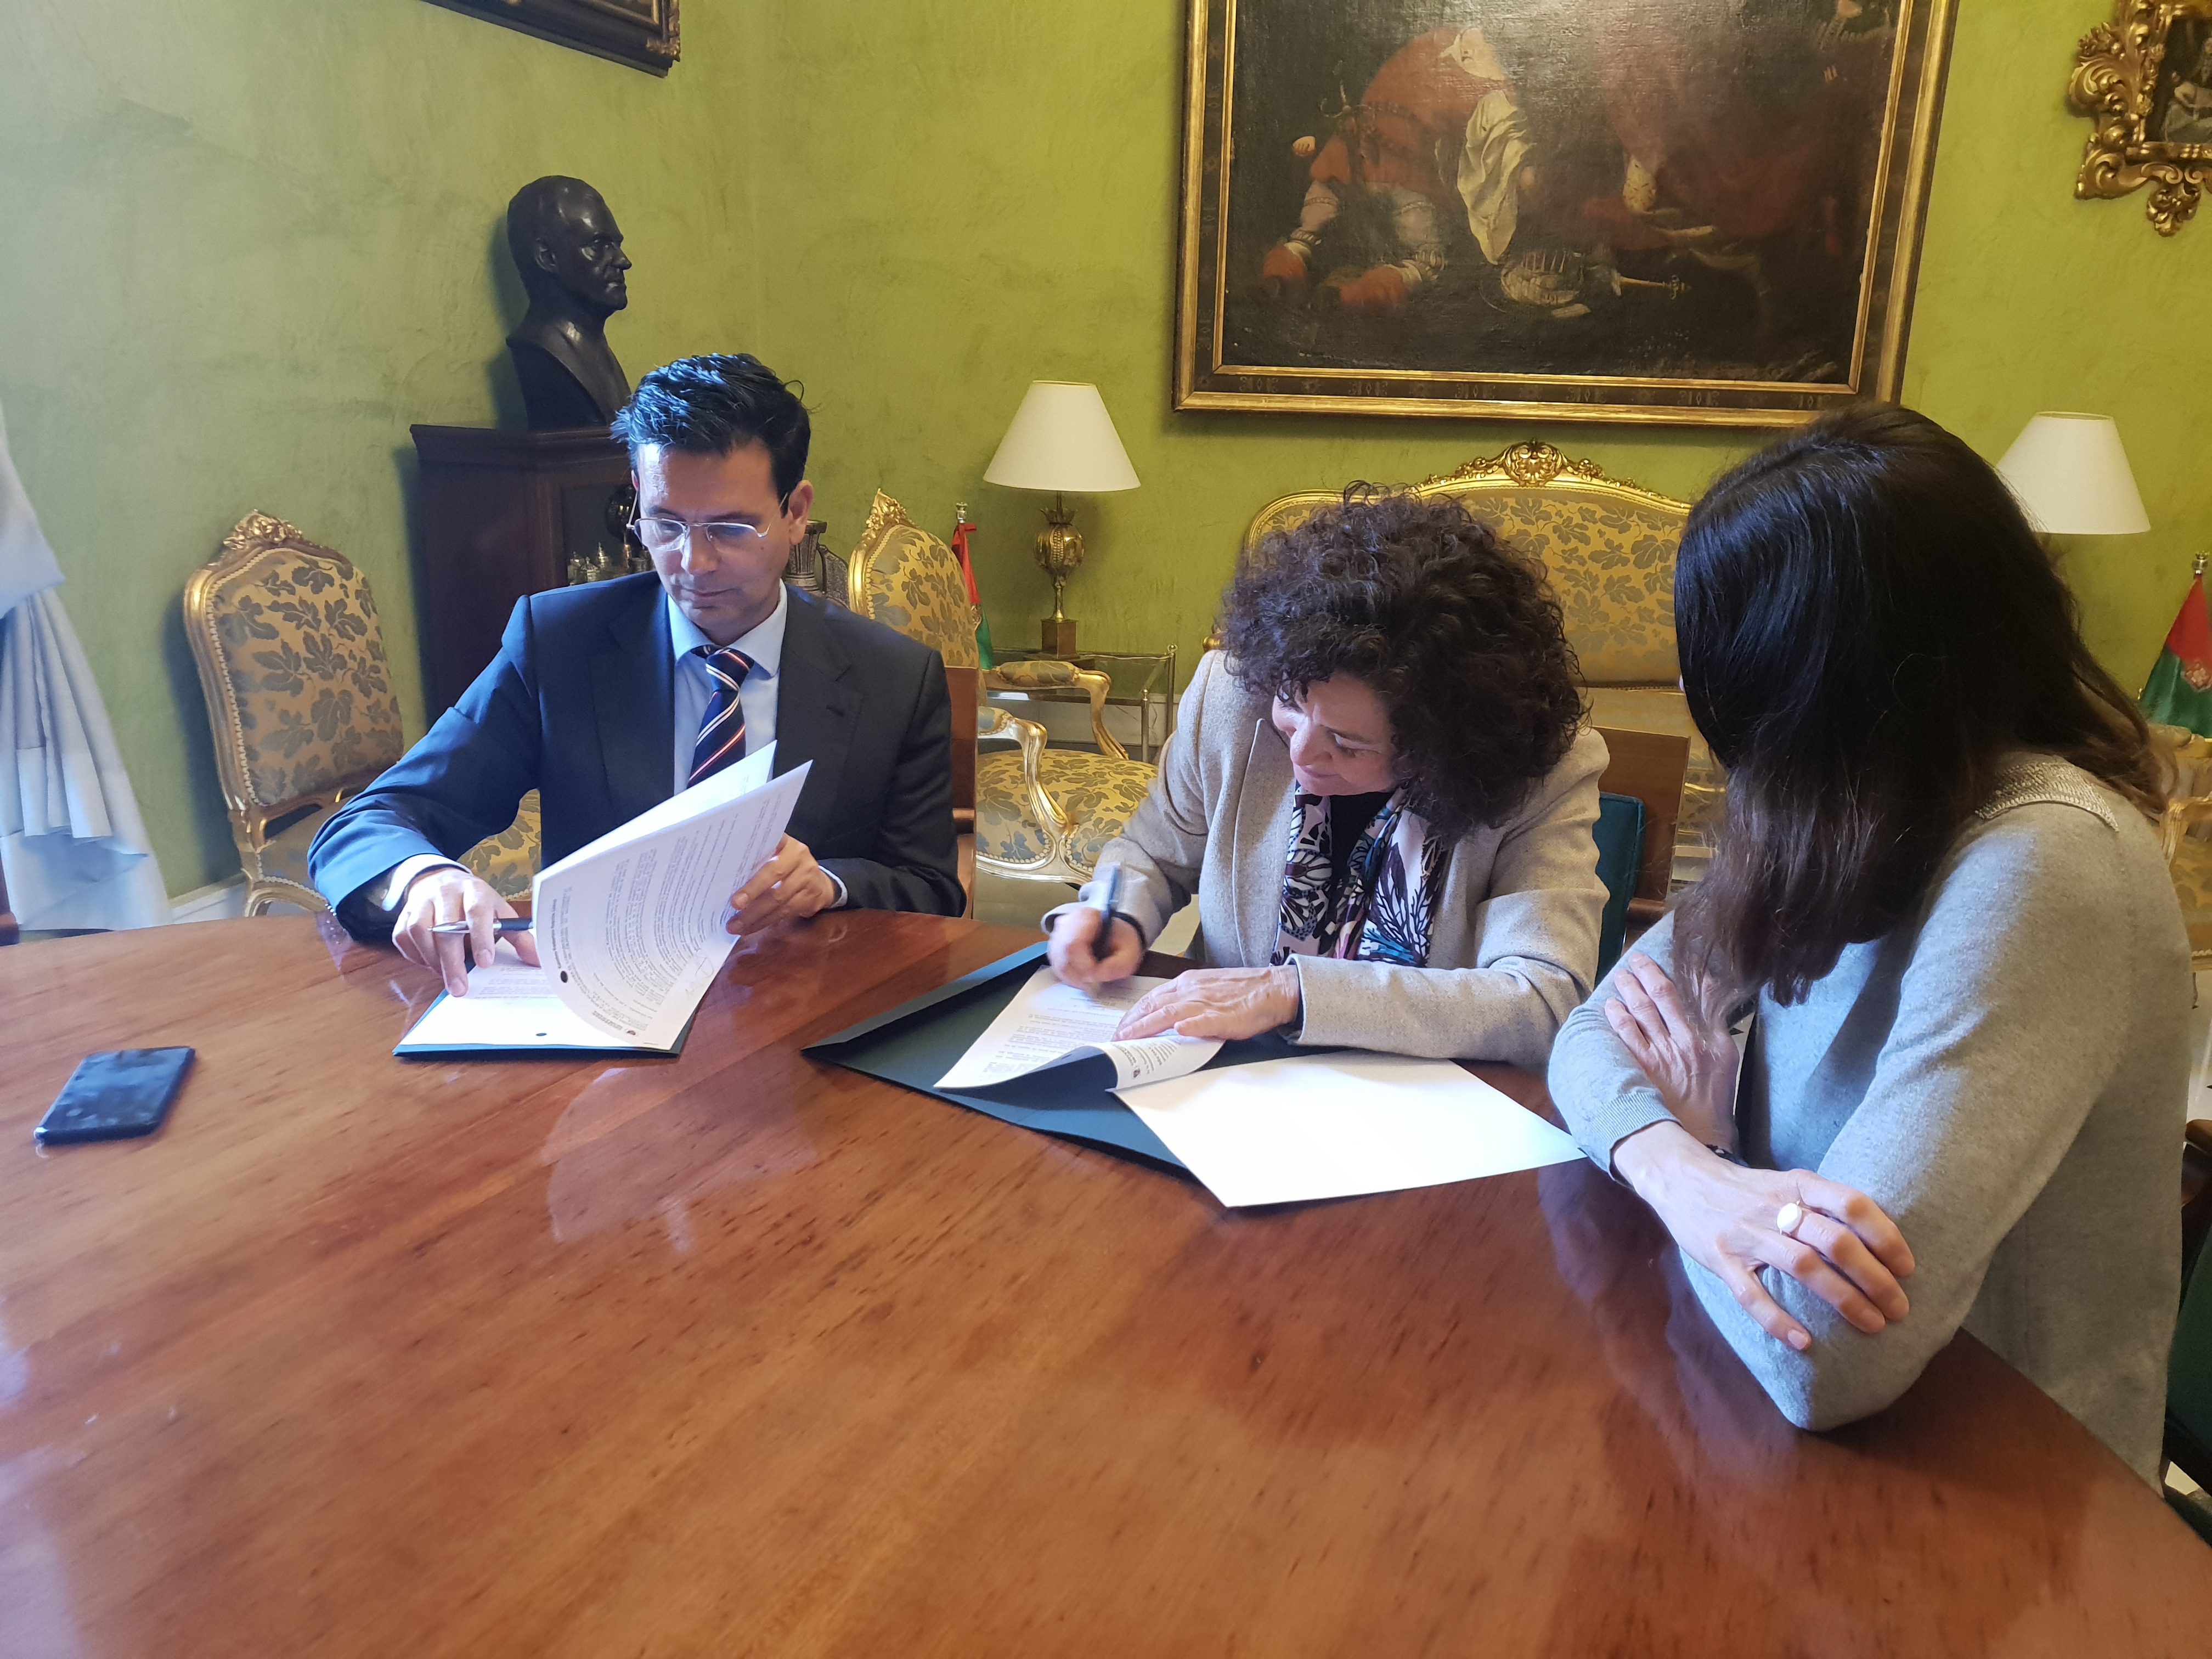 El alcalde y la rectora firman un convenio para impulsar actividades culturales y científicas relacionadas con el teatro